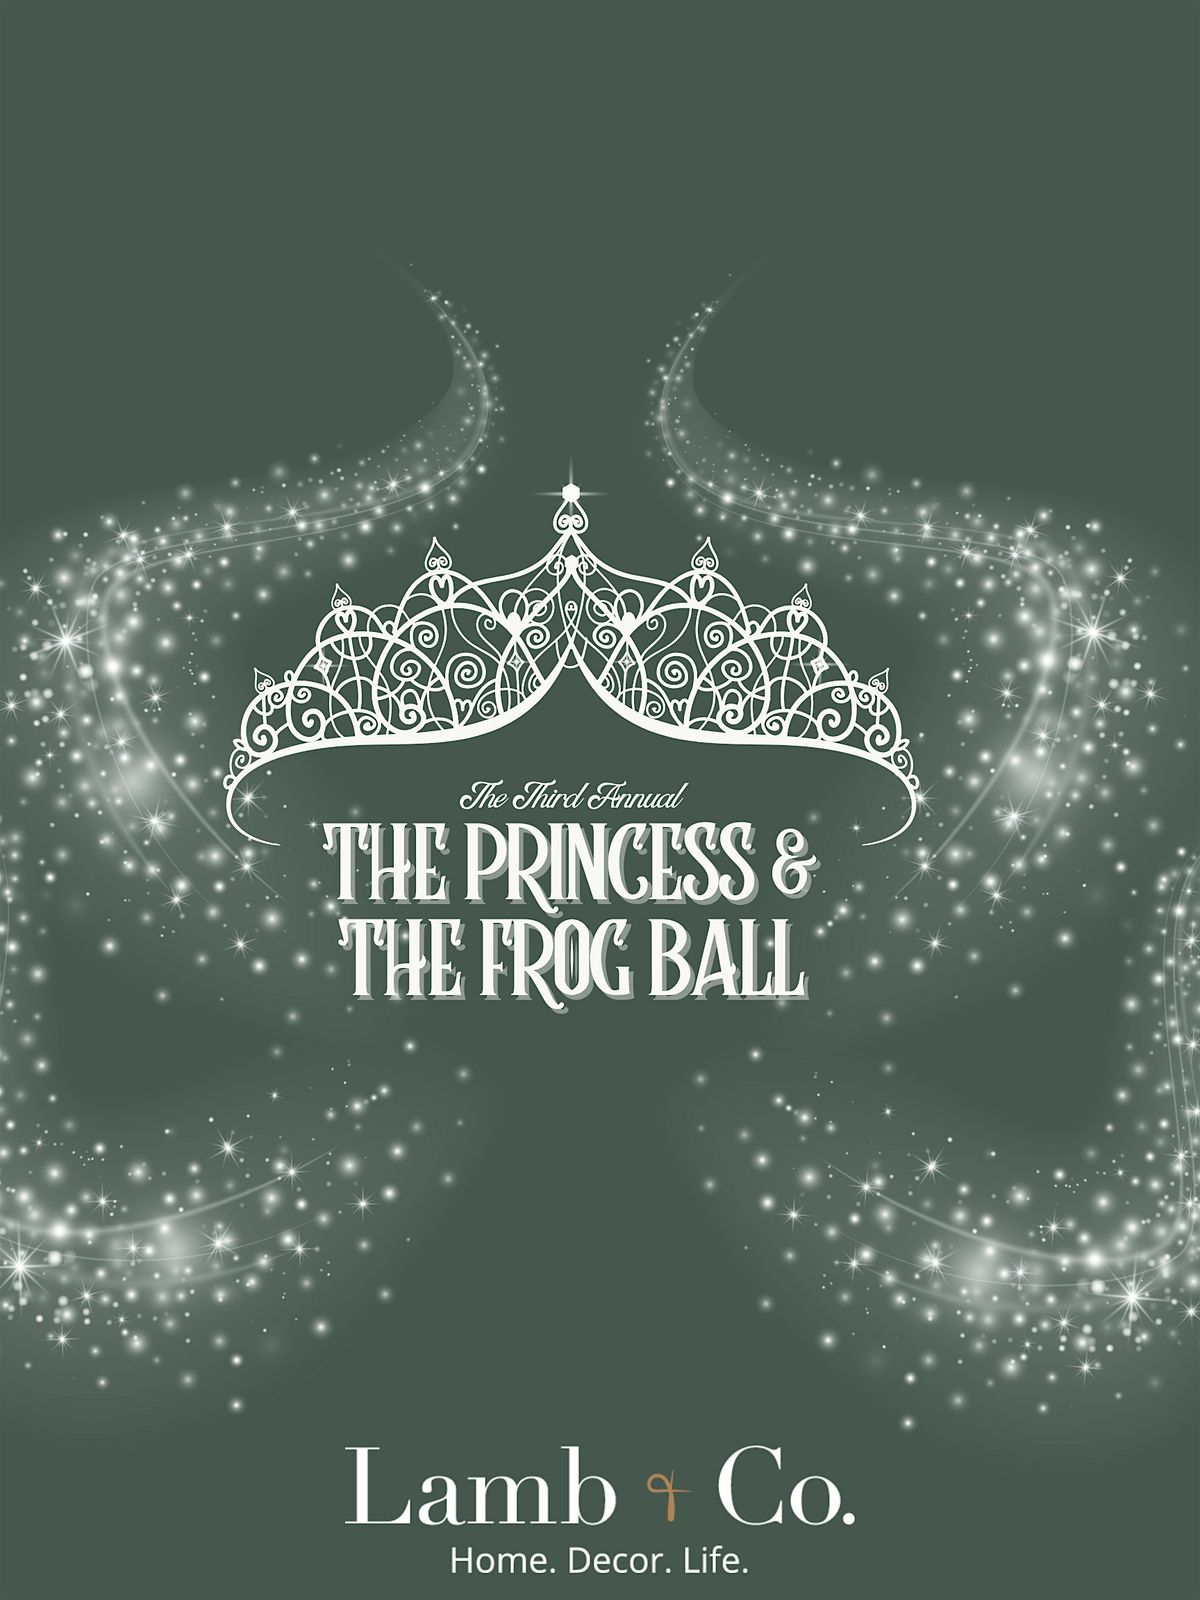 The Princess and the Frog Ball